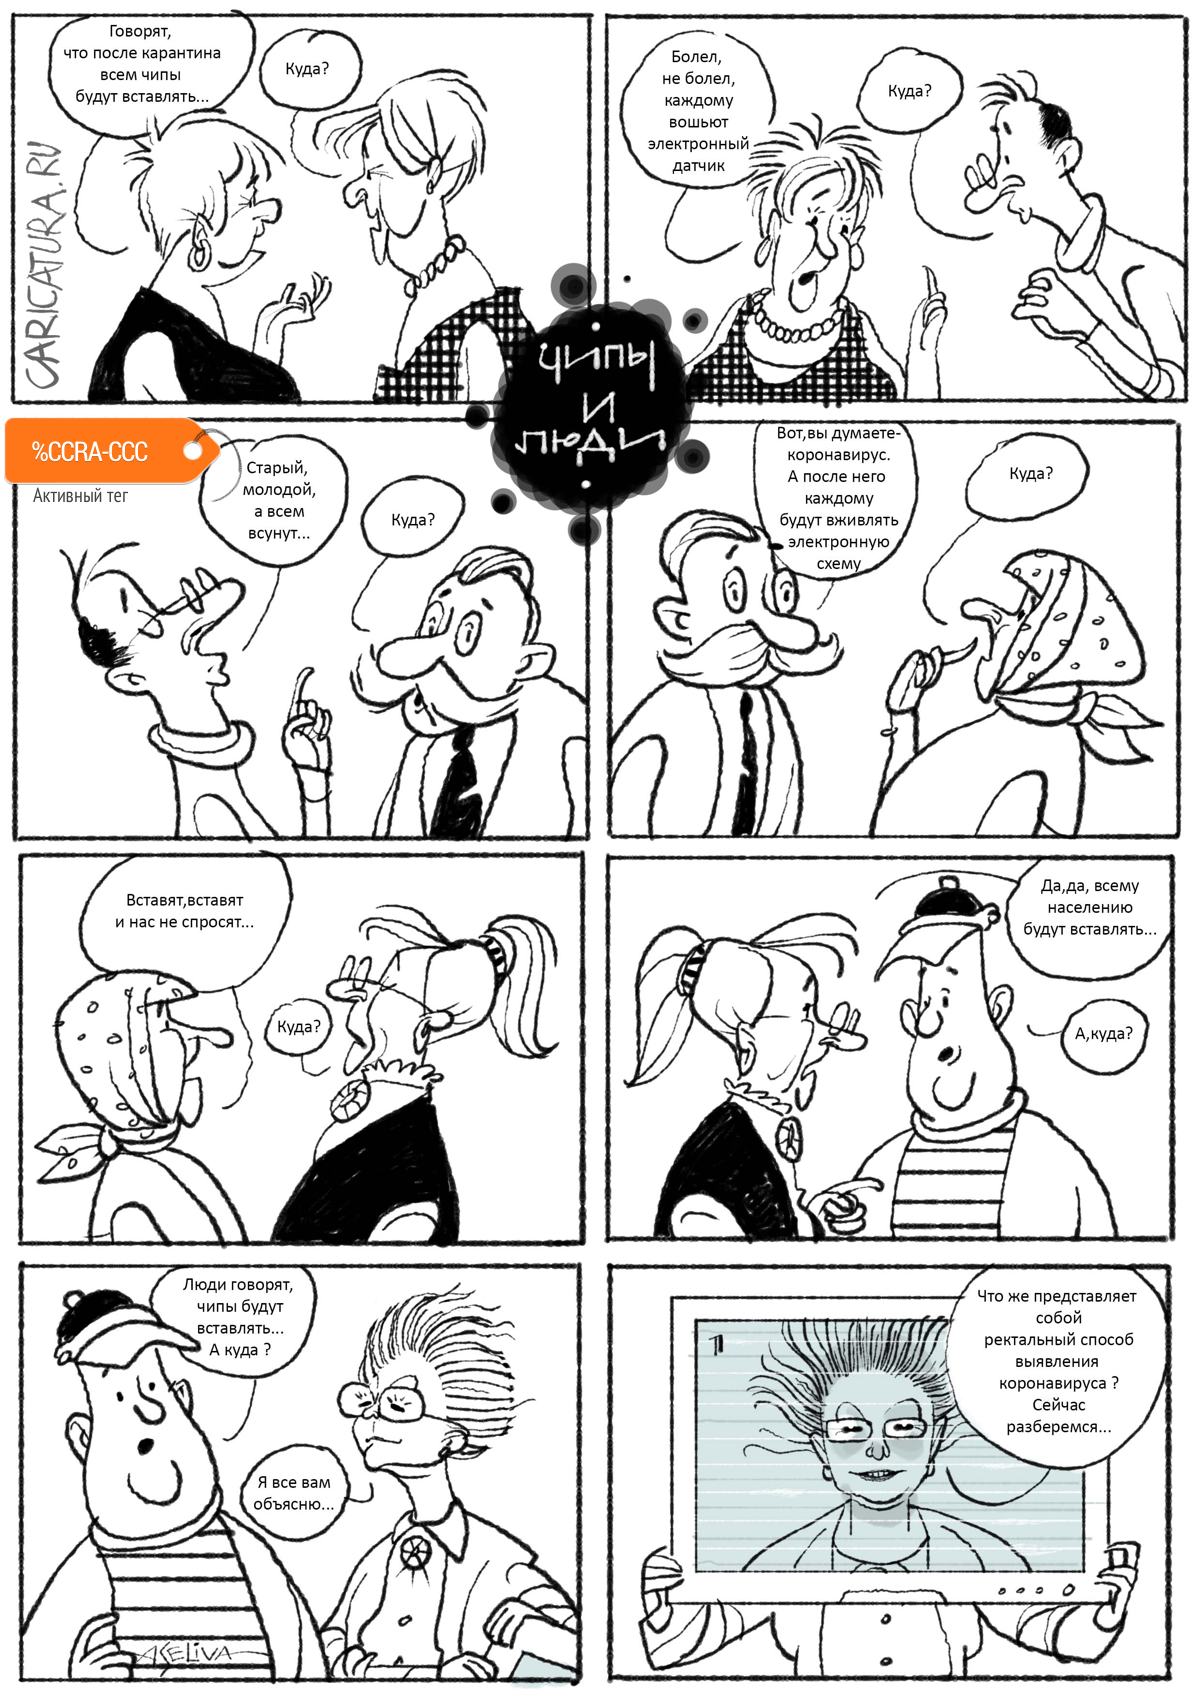 Комикс "Распространение слухов во время коронавируса", Андрей Селиванов